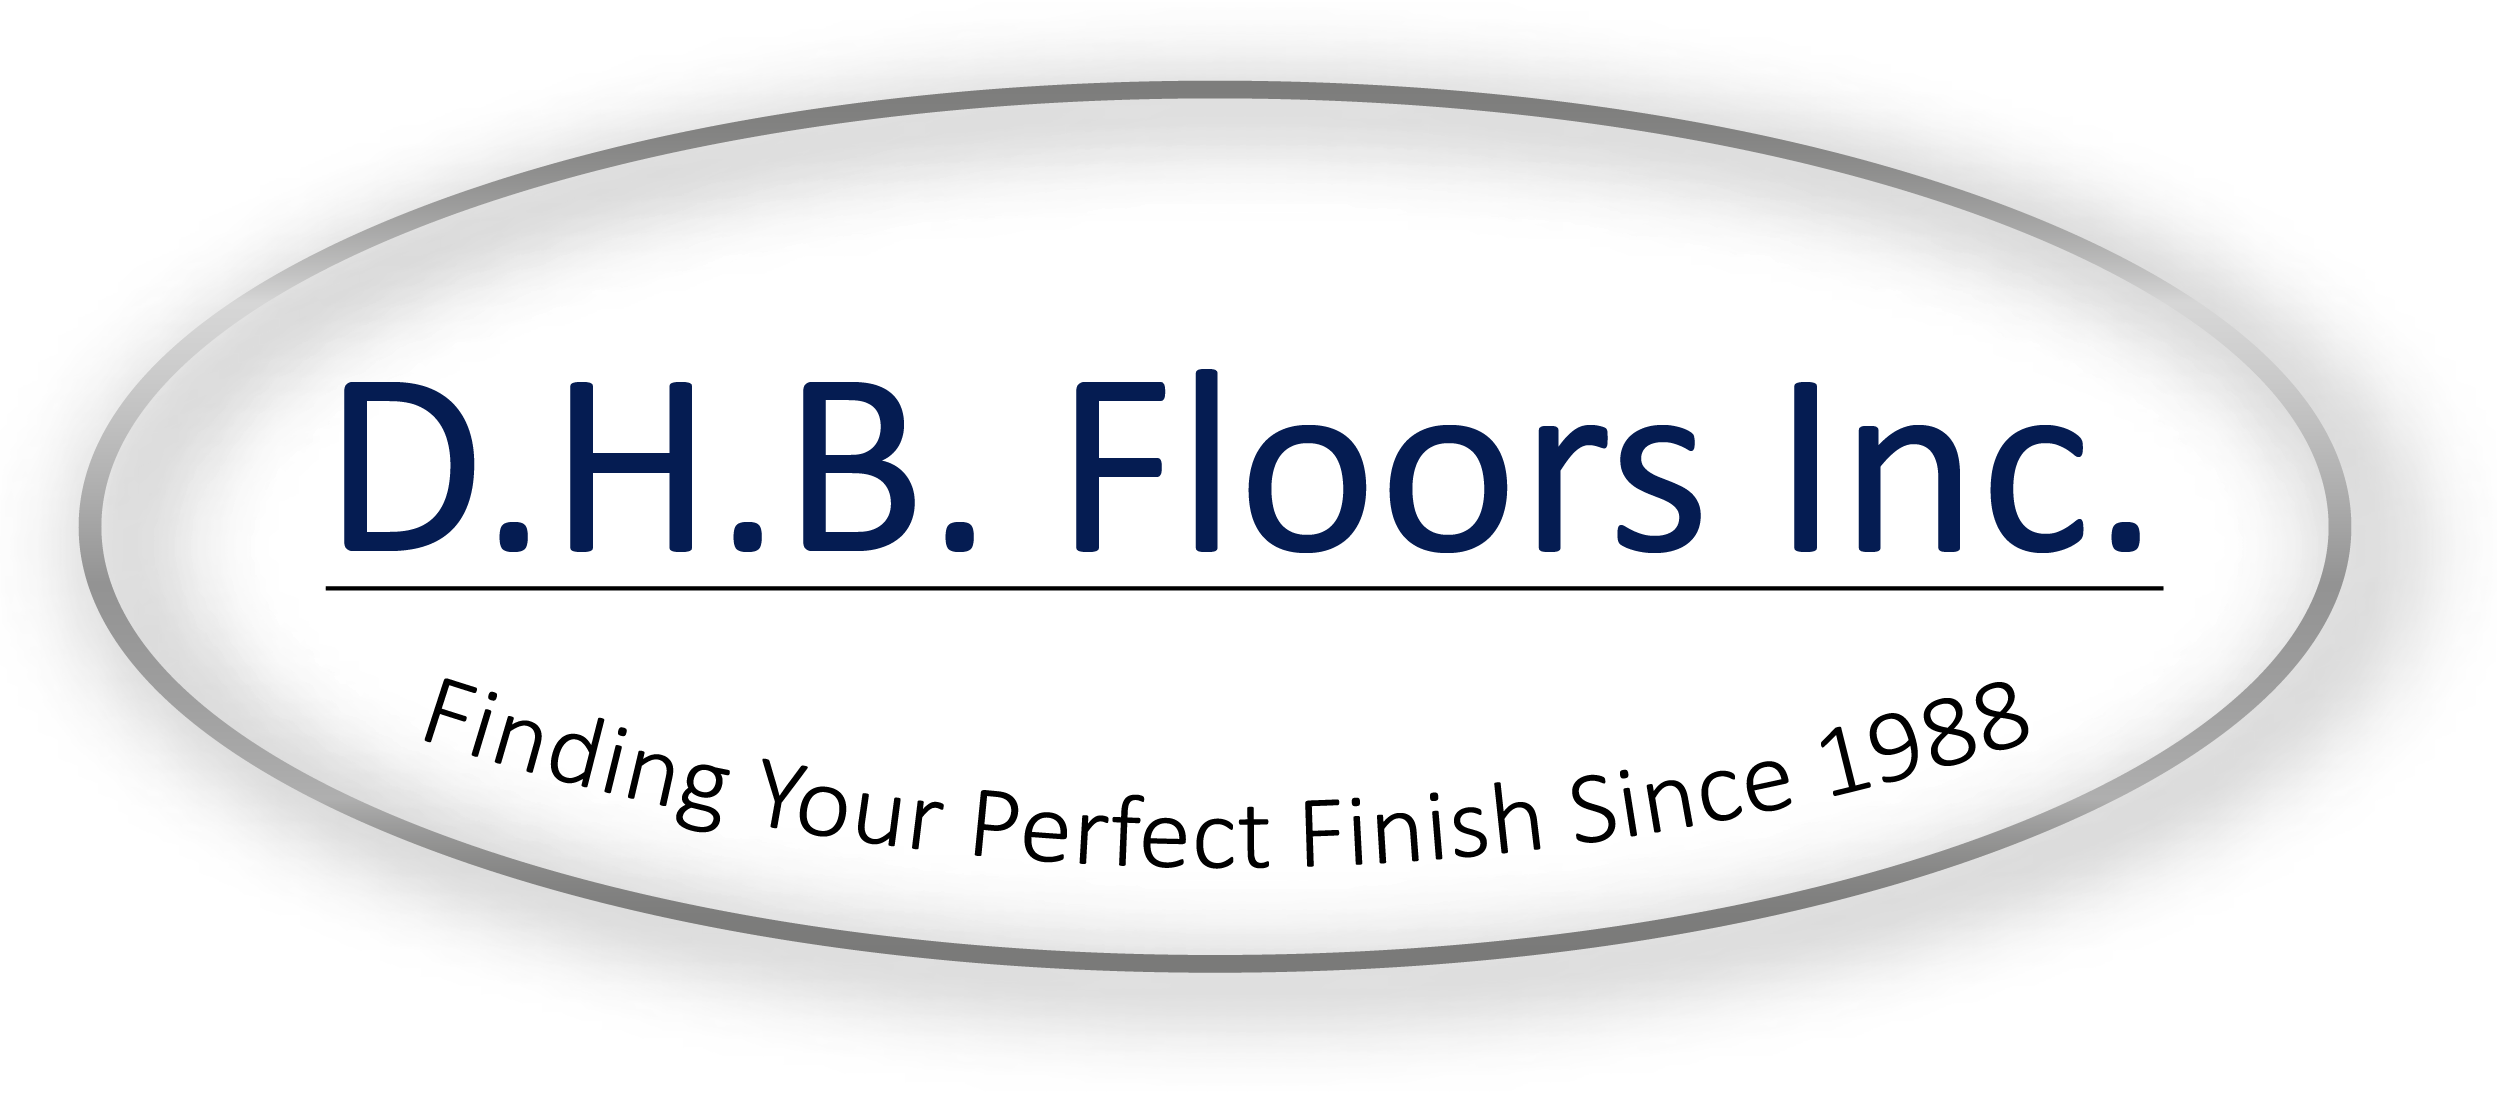 D.H.B. Floors Inc